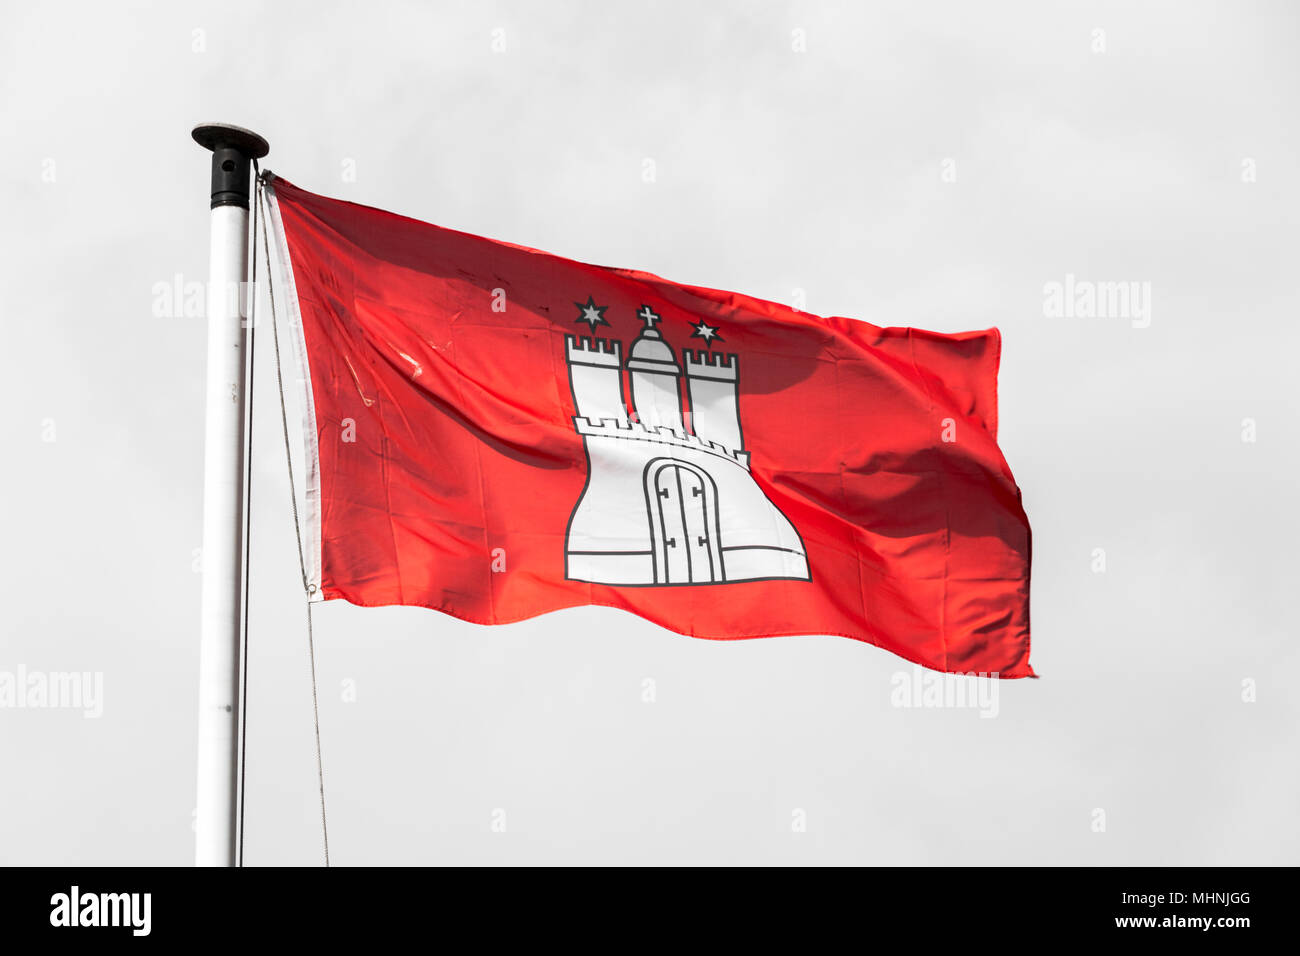 Zivilgesellschaft und Staat Flagge der Freien und Hansestadt Hamburg, mit den Wappen zeigt eine weiße Burg mit drei Türmen auf rotem Hintergrund Stockfoto